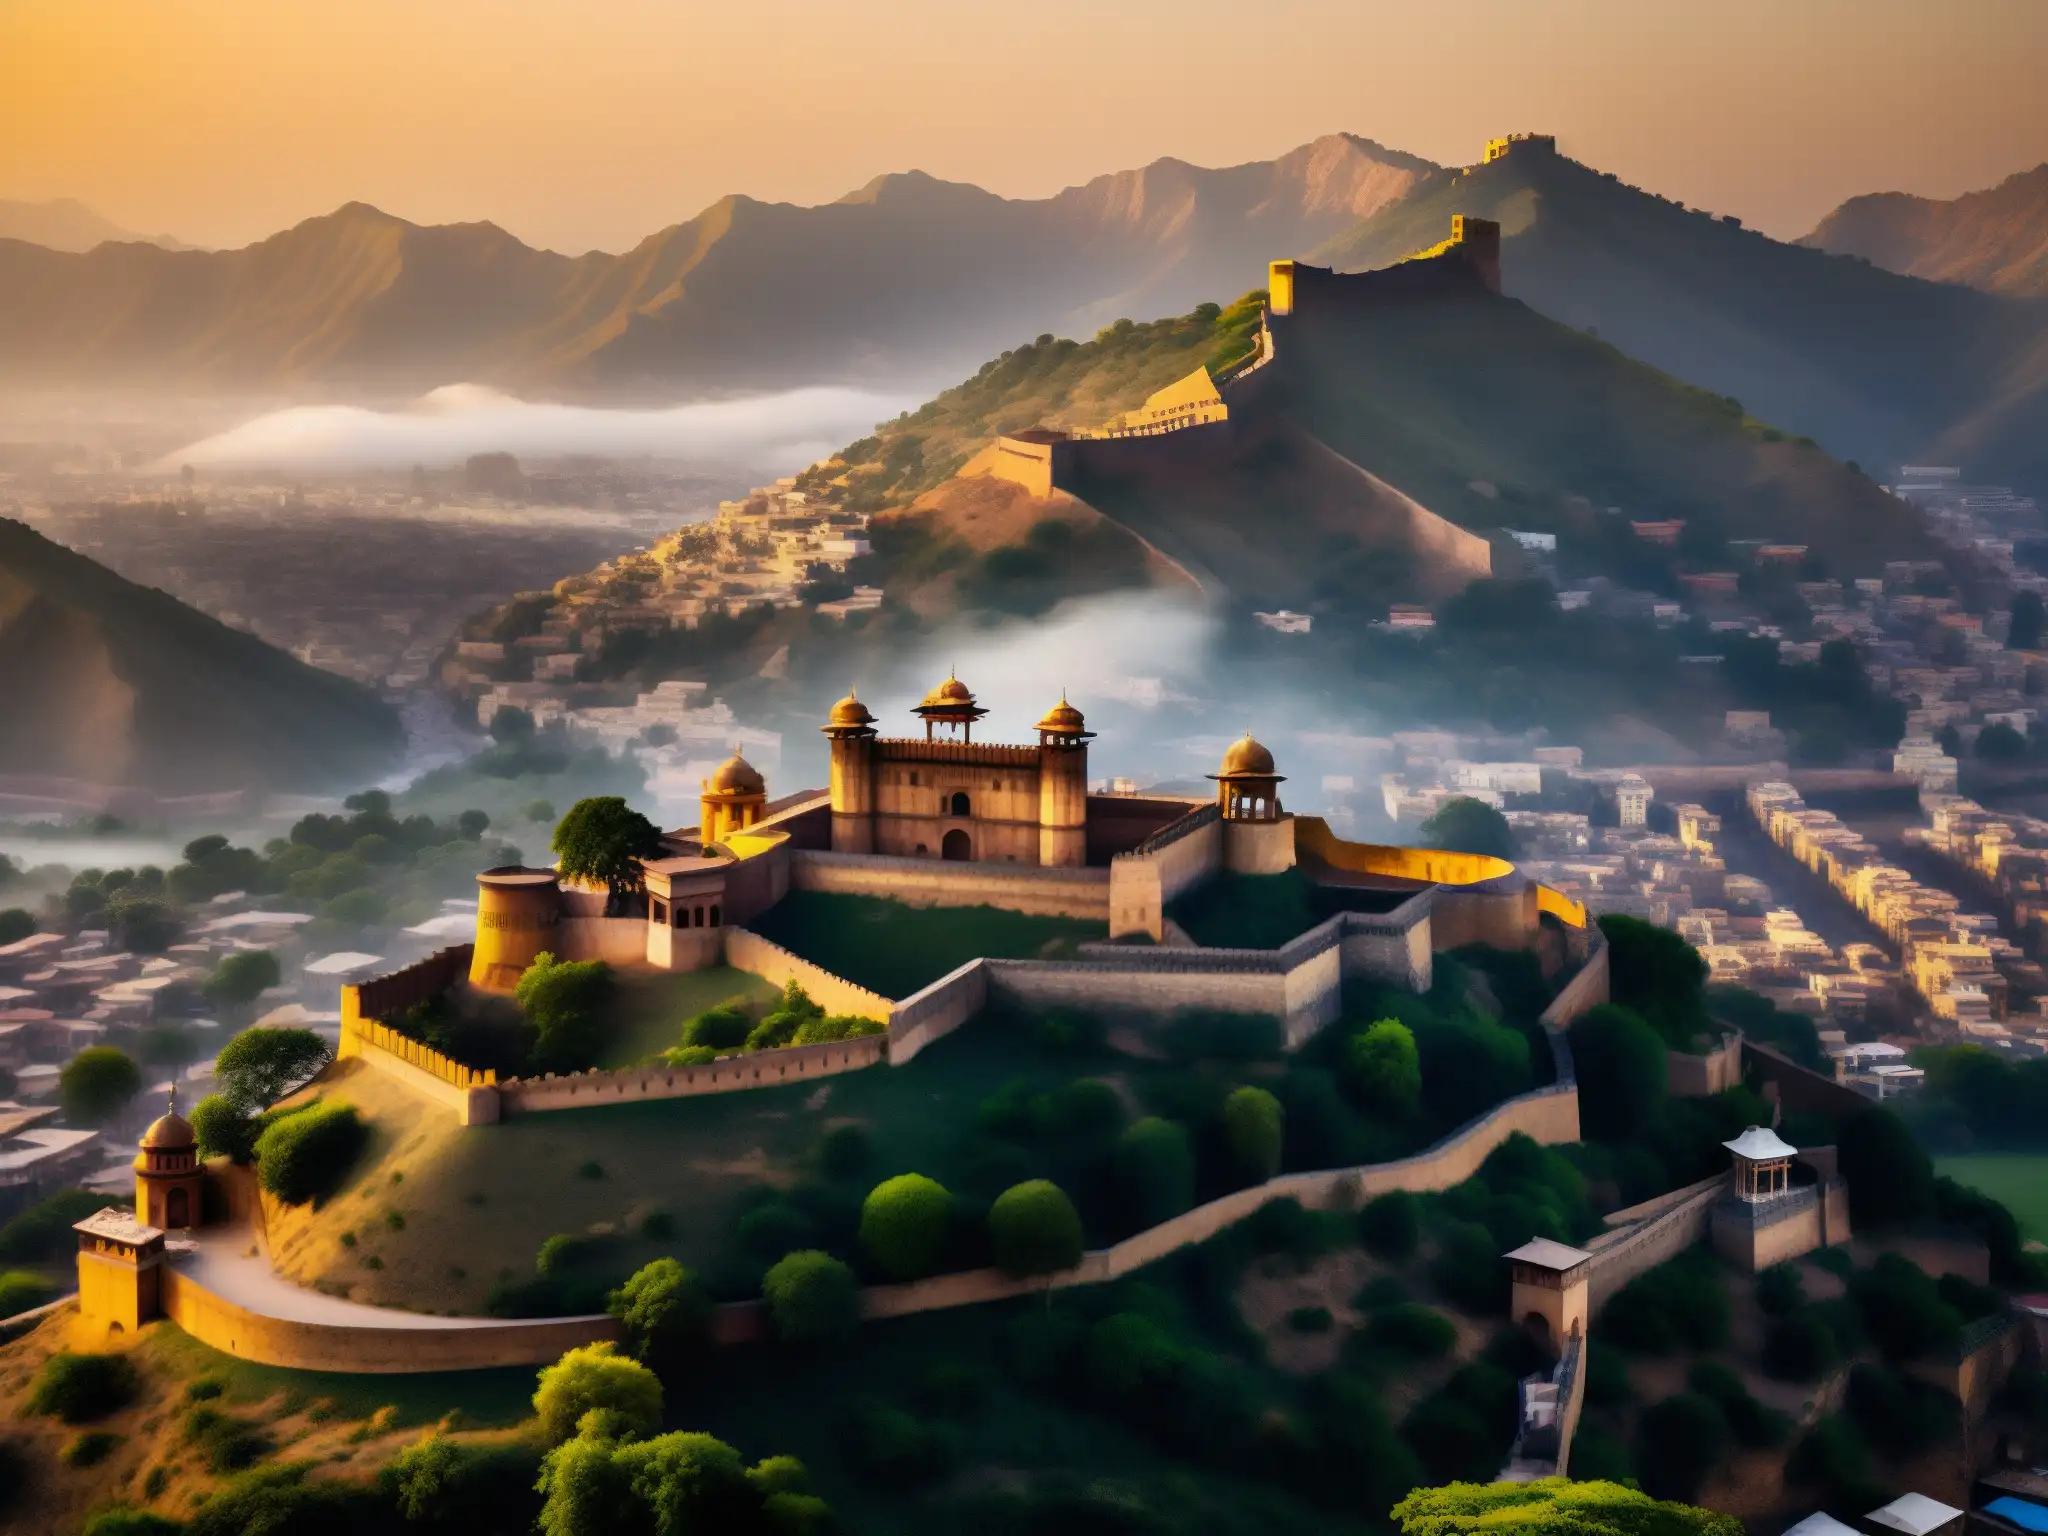 La mística fortaleza de Jaipur se ilumina con el cálido resplandor del atardecer, mientras las montañas se perfilan en la lejanía